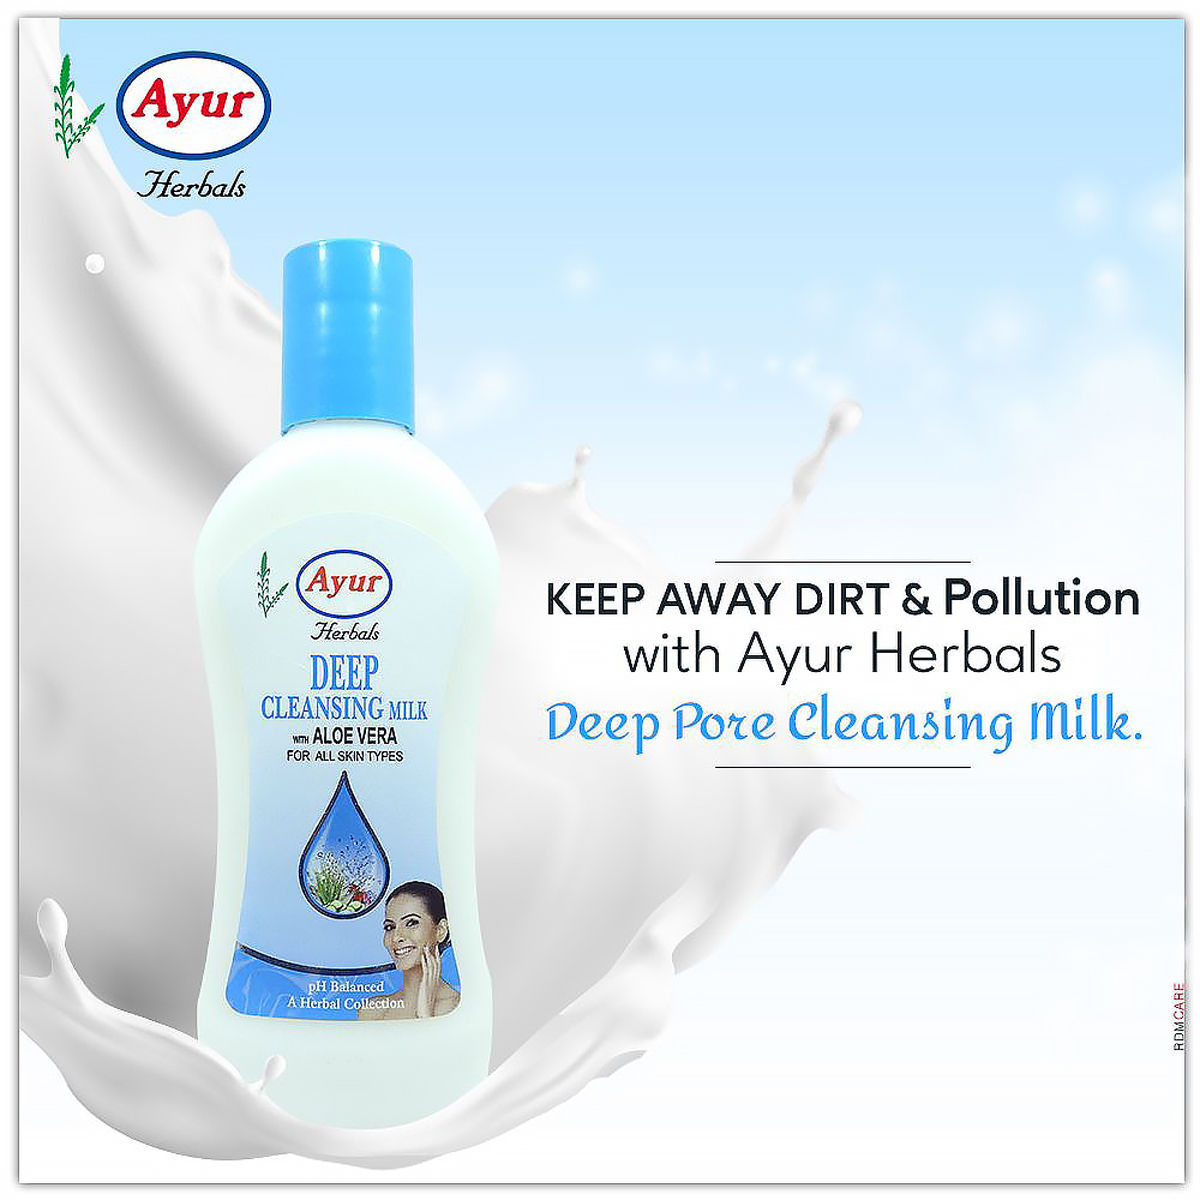 Ayur Herbal Deep Pore Cleansing Milk, 100 ml, Pack of 1 